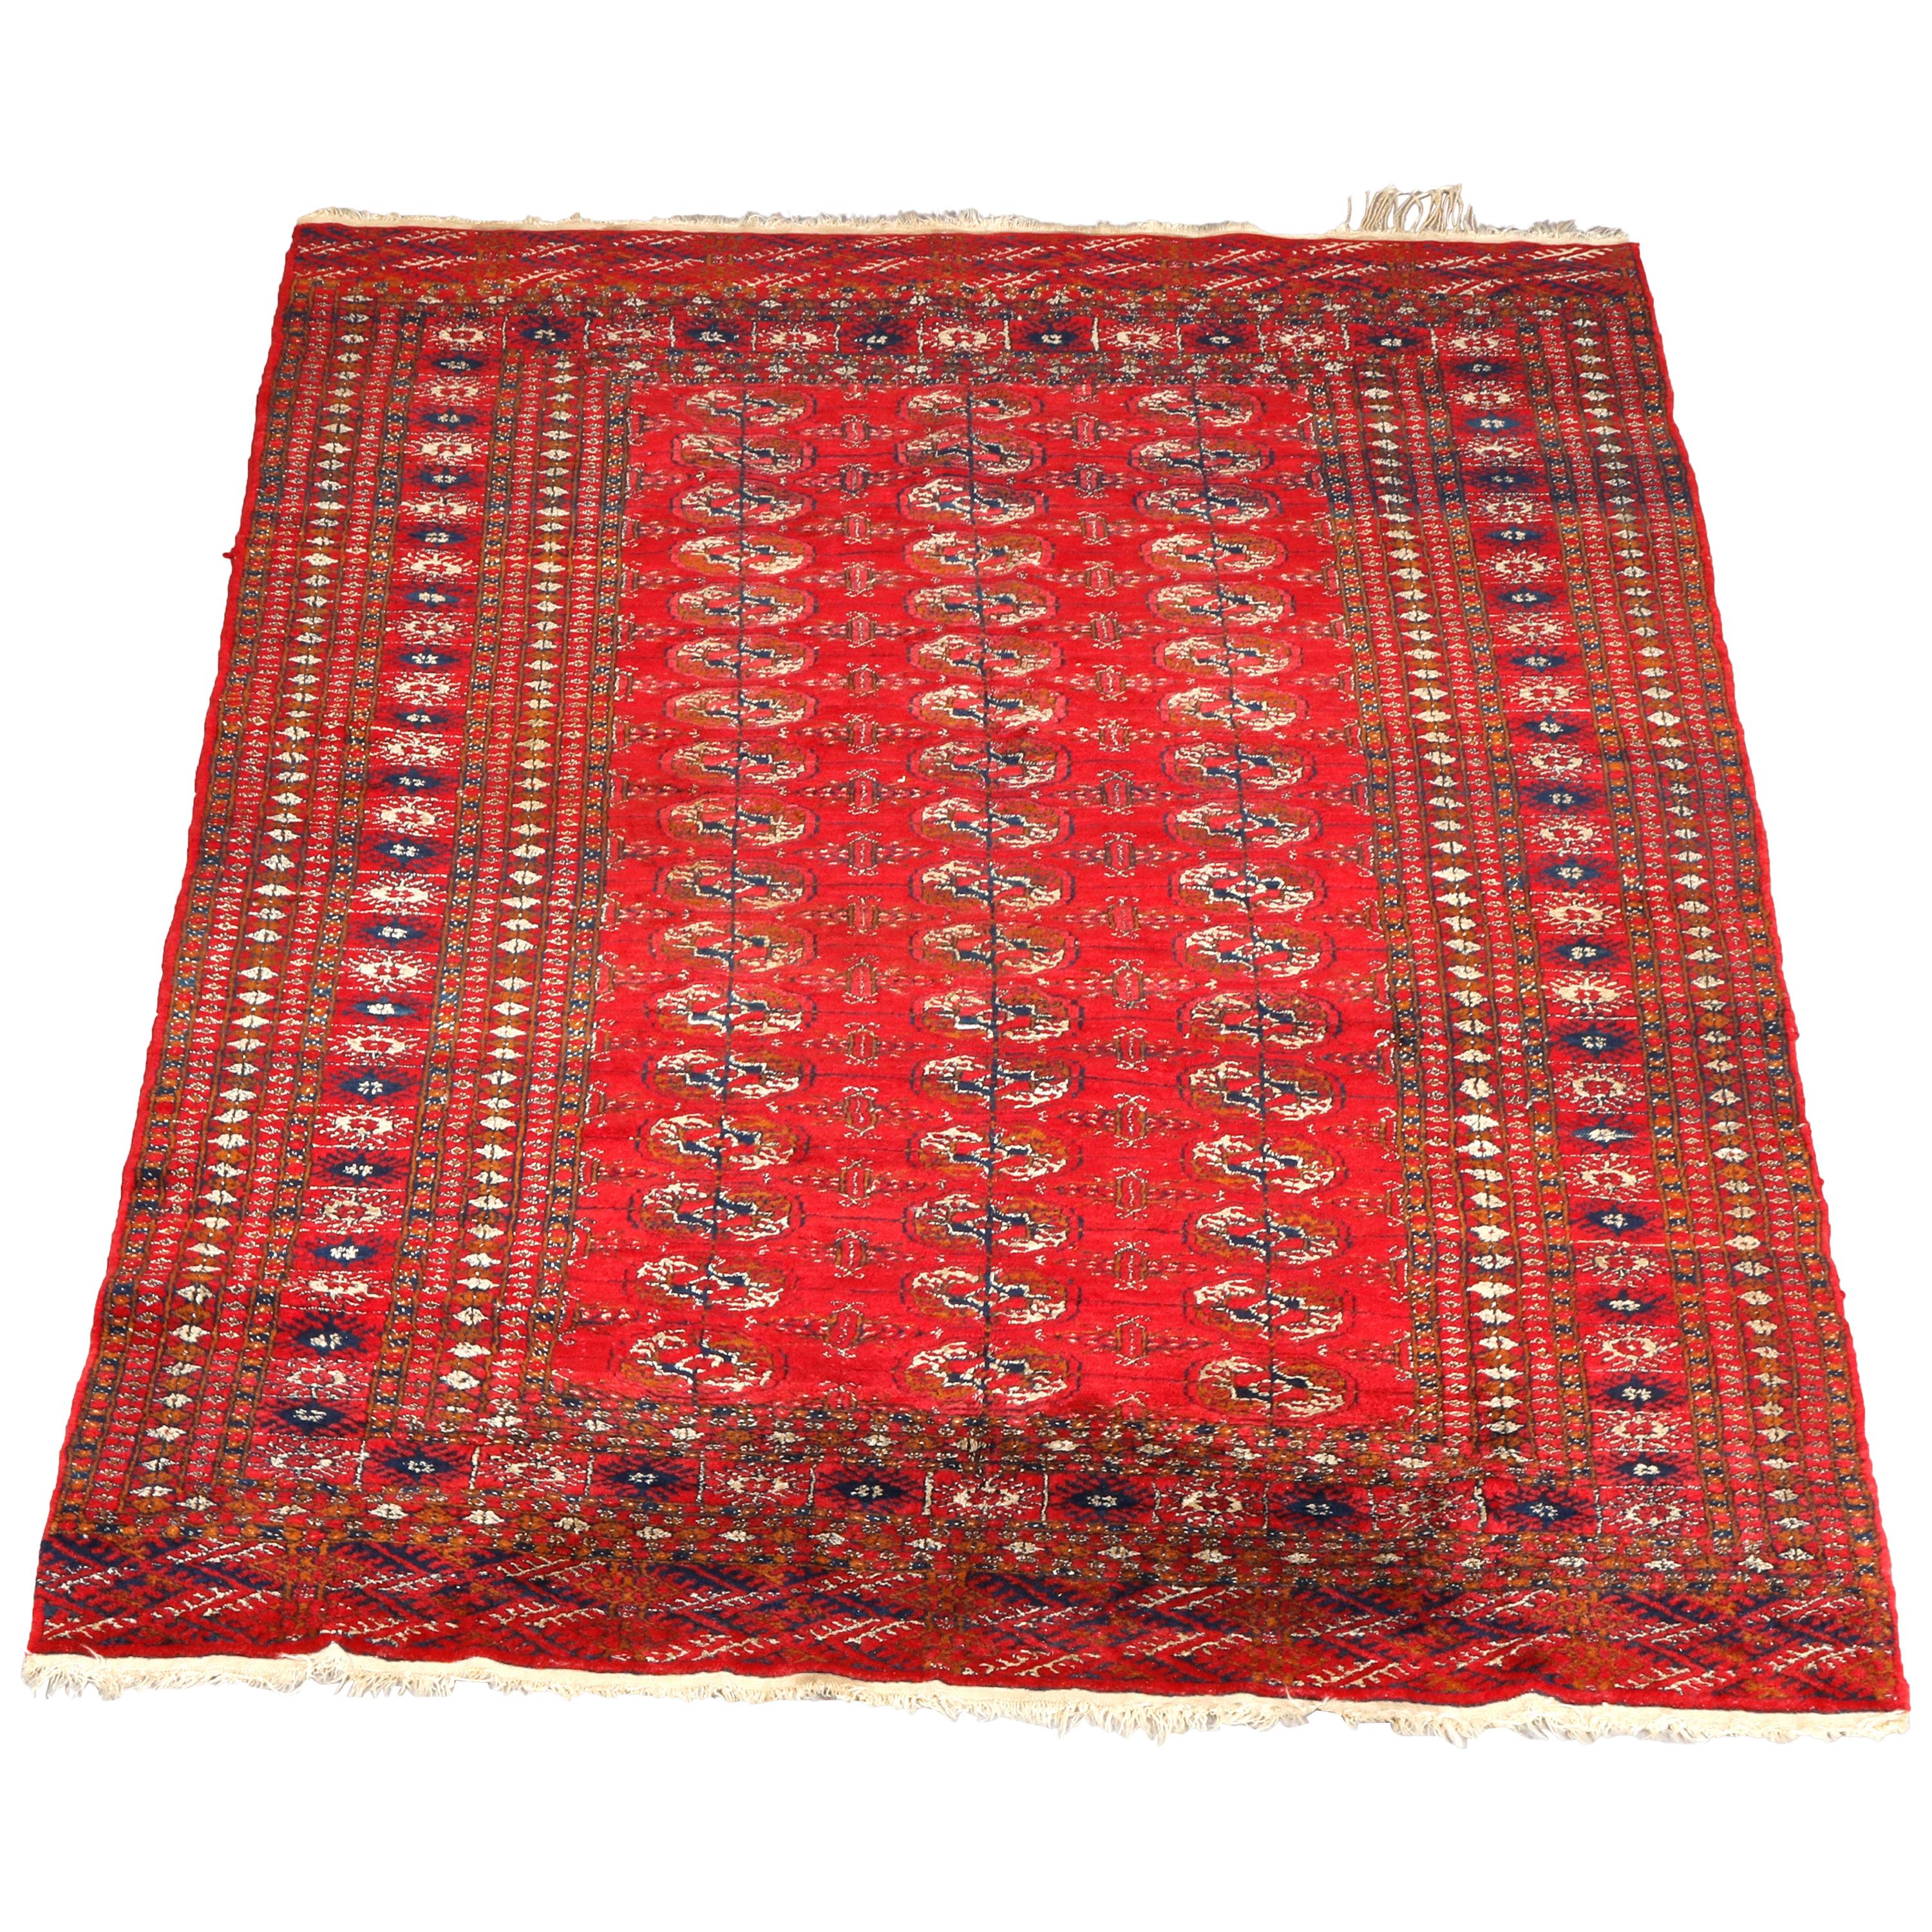 Antique Persian Bokhara Nomadic Tribal Wool Oriental Rug, circa 1920